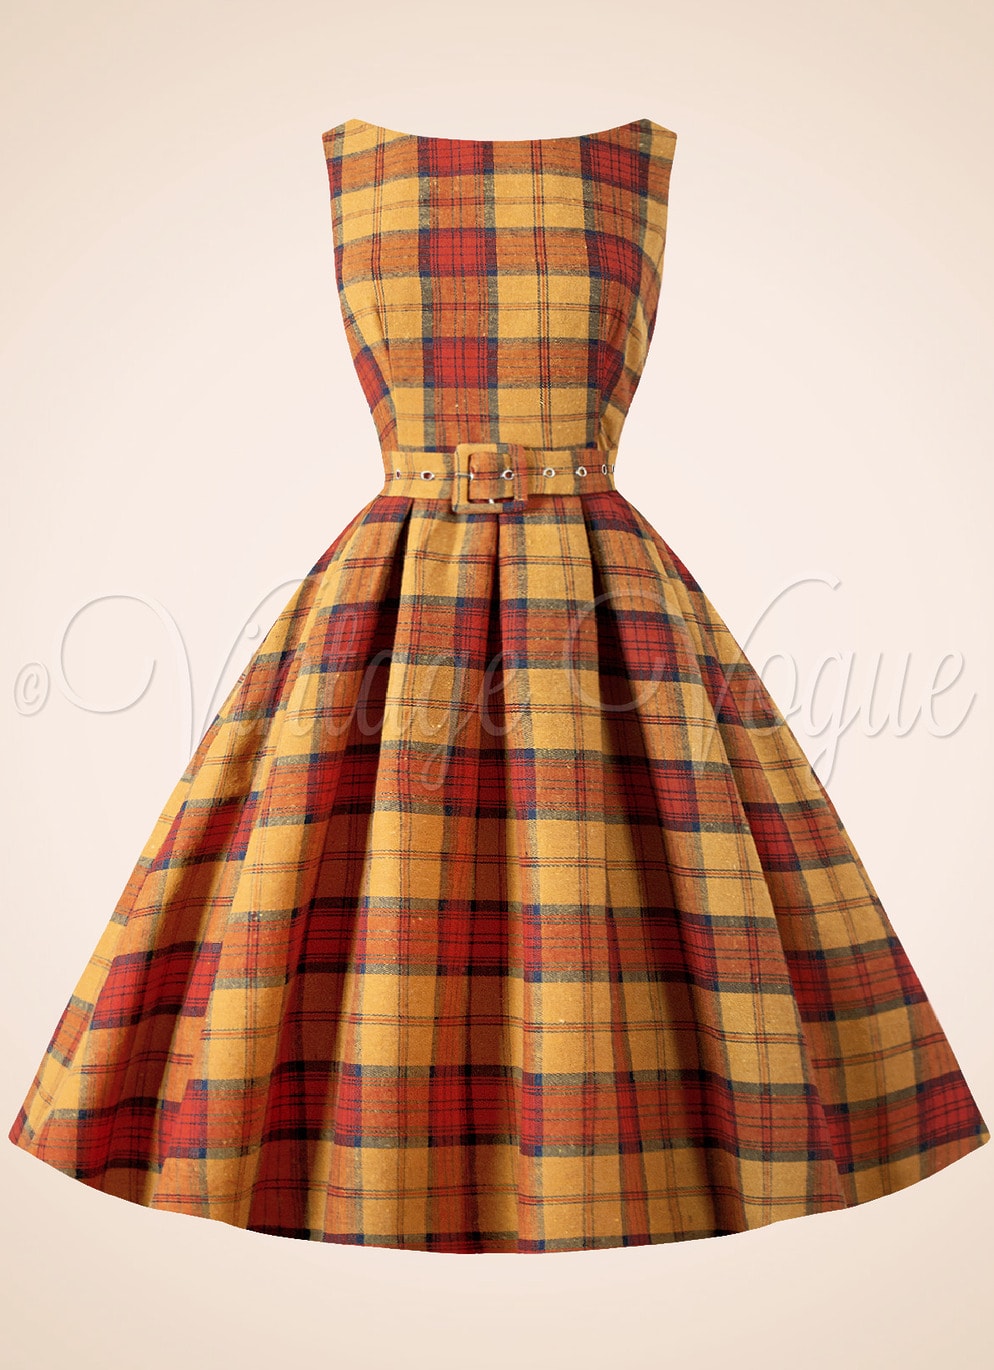 50er Jahre Petticoat Damenkleid Dress Winterkleid Weihnachtskleid Herbstkleid Tartan Karo kariert Schottenmuster